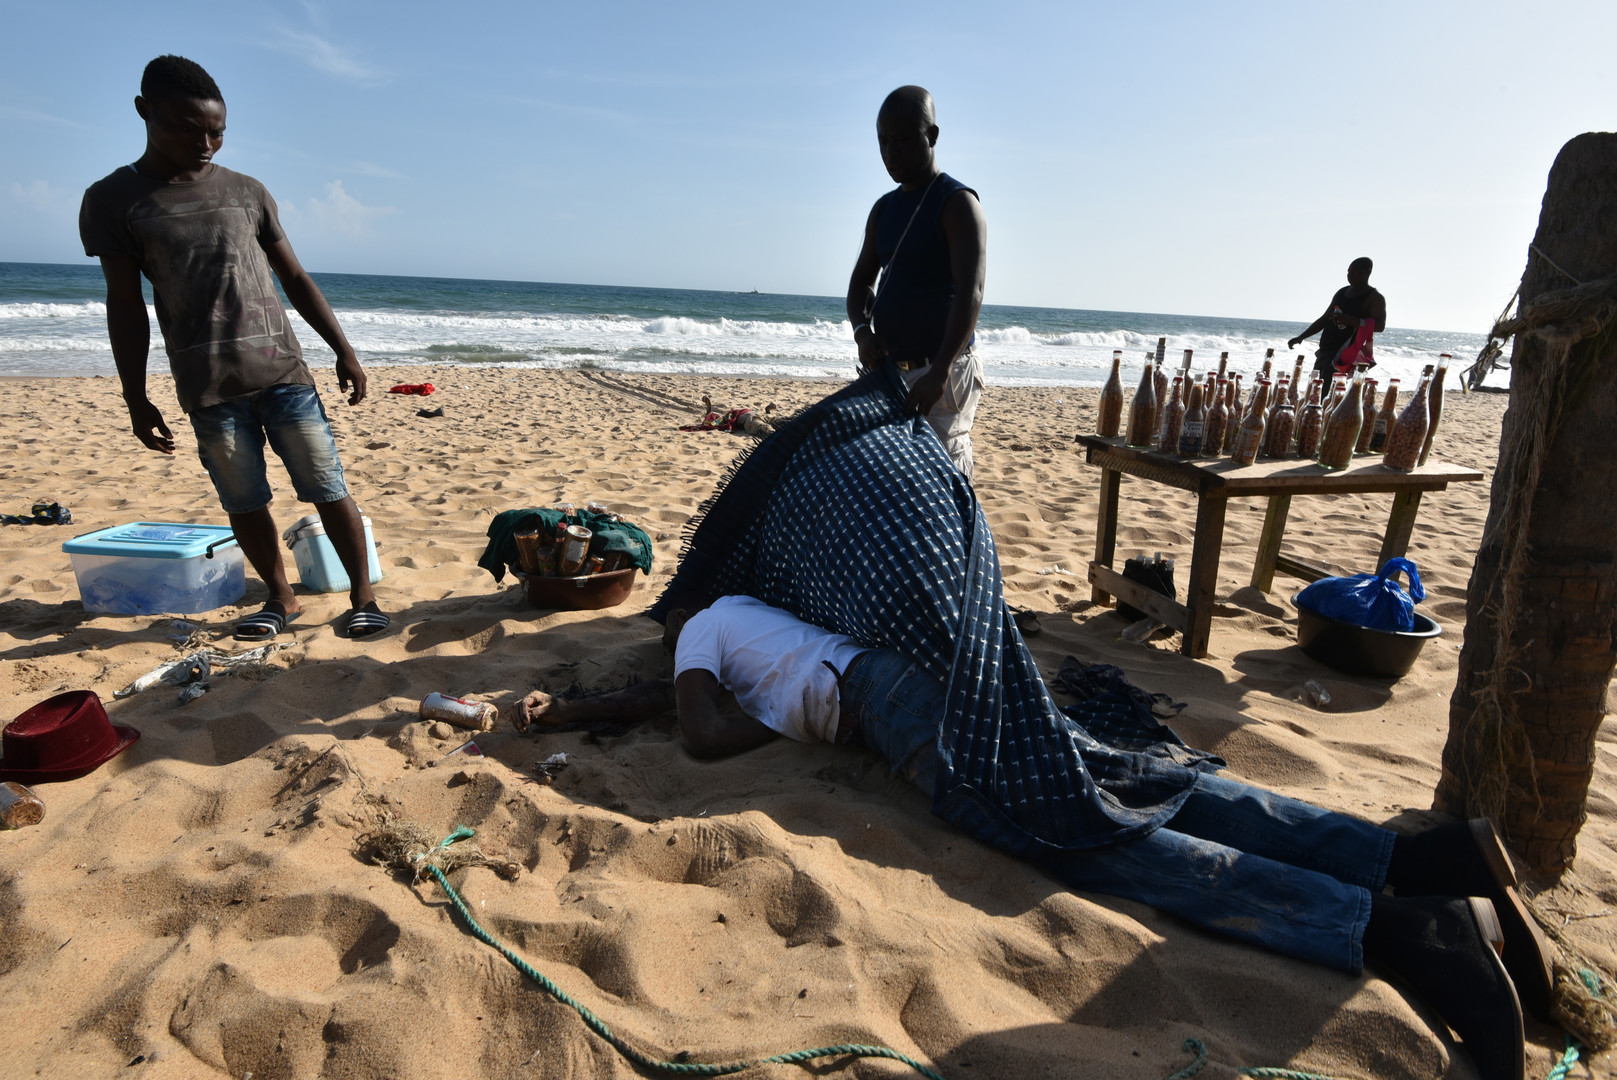 Al-Qaïda revendique l'attaque de Grand-Bassam en Côte d'Ivoire qui «viserait la France» (PHOTOS)